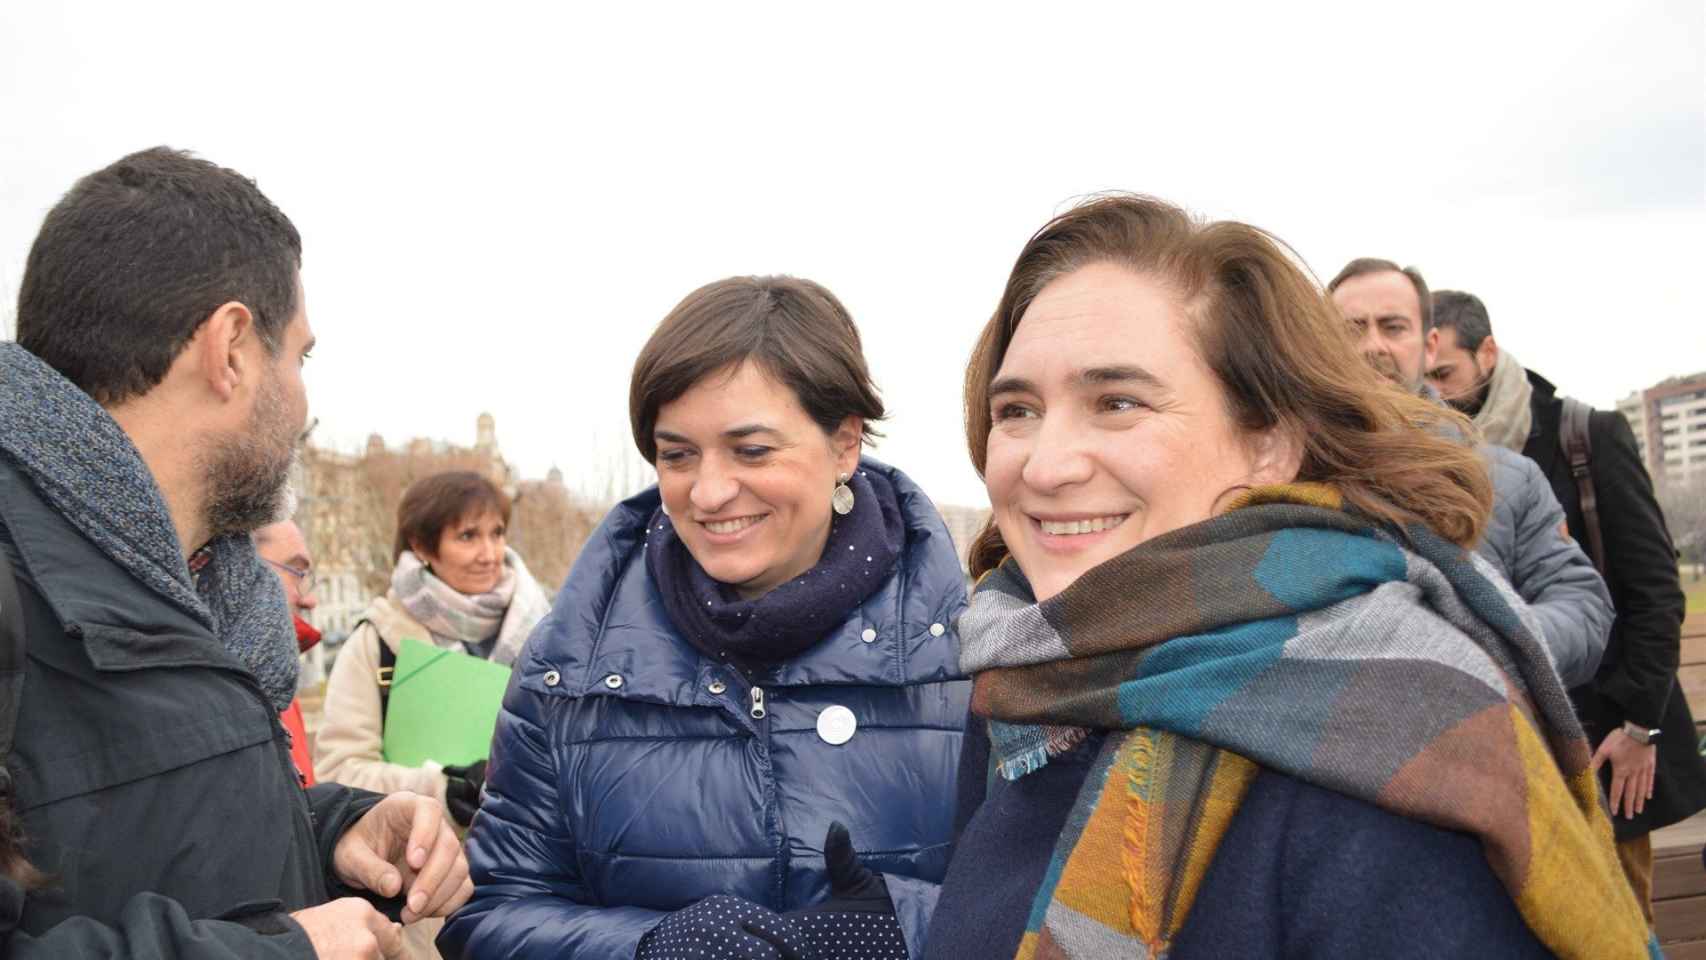 Sara Vilà, de Catalunya en Comú Podem, junto a Ada Colau, que ha acusado al PP de mostrar su cara más despreciable con Catalunya / EUROPA PRESS